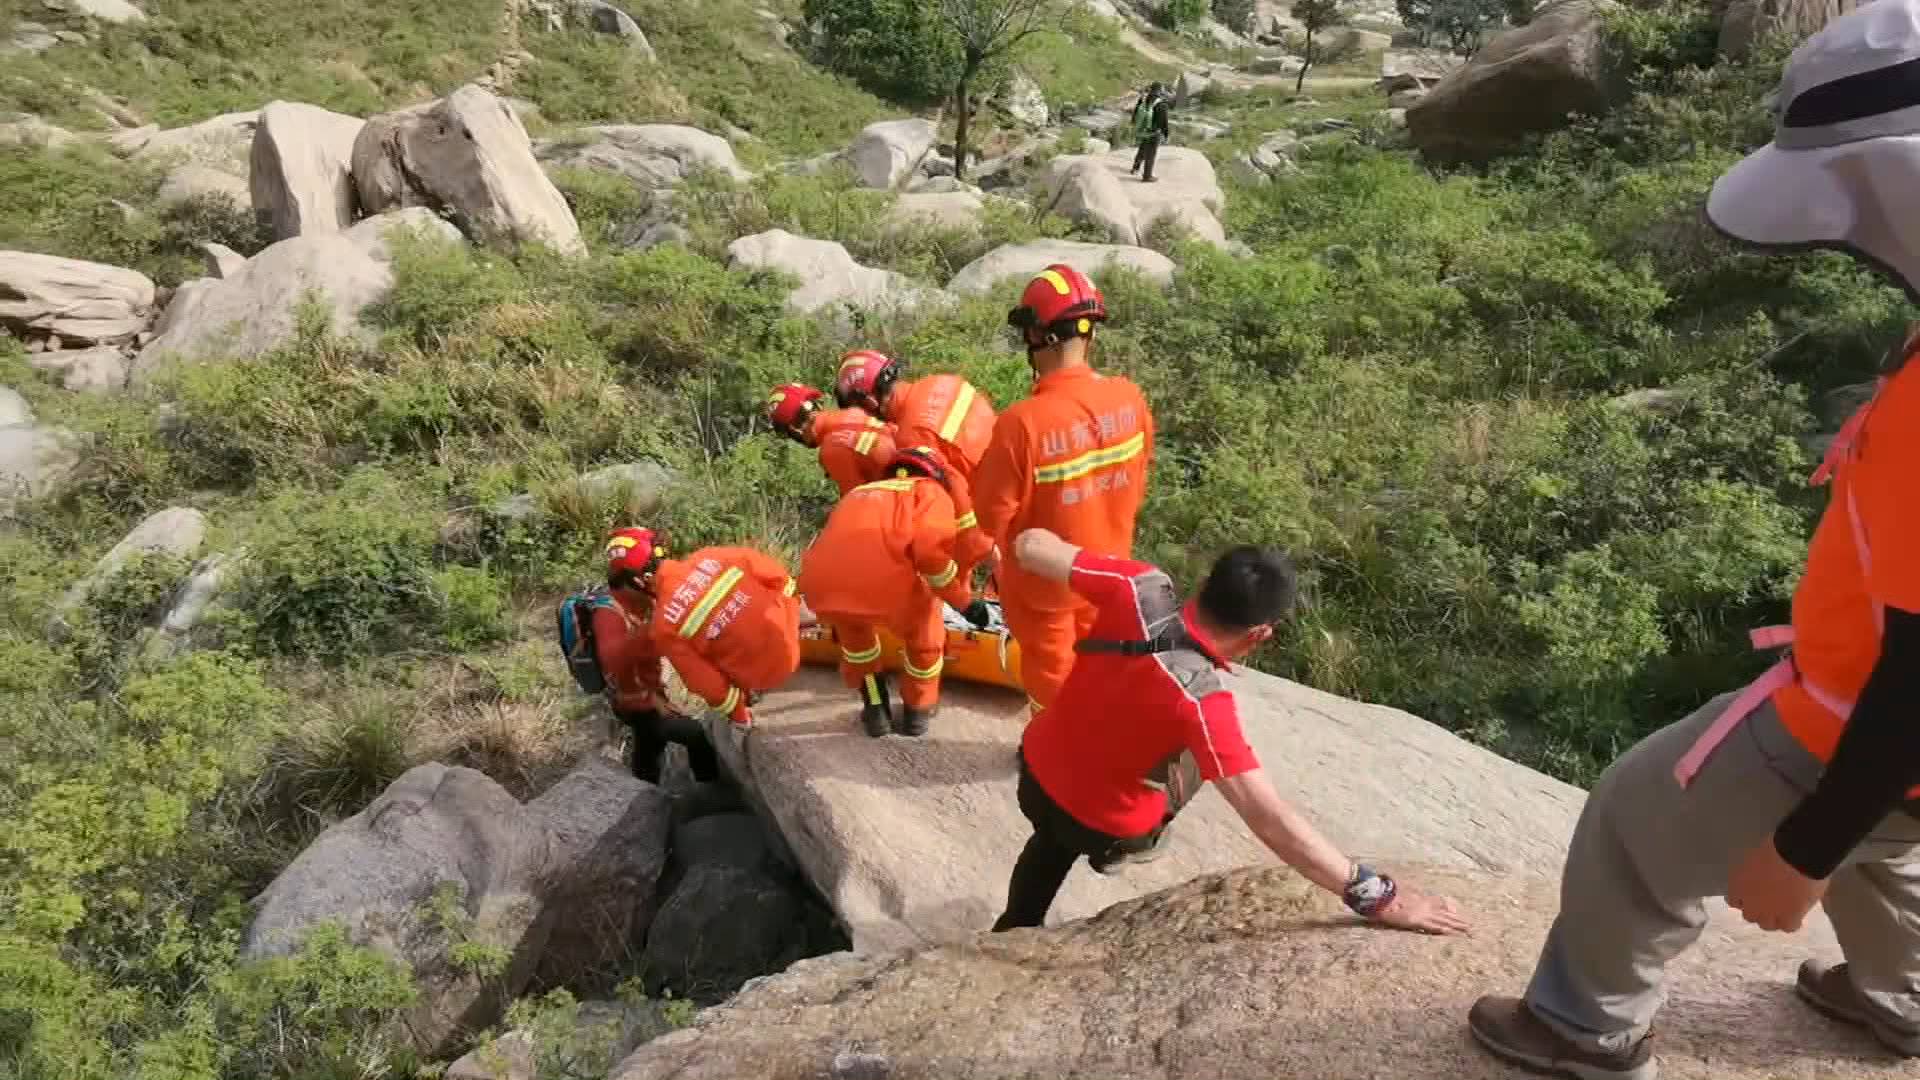 临沂一驴友登山摔伤致小腿骨折 消防员3小时翻山越岭艰难营救